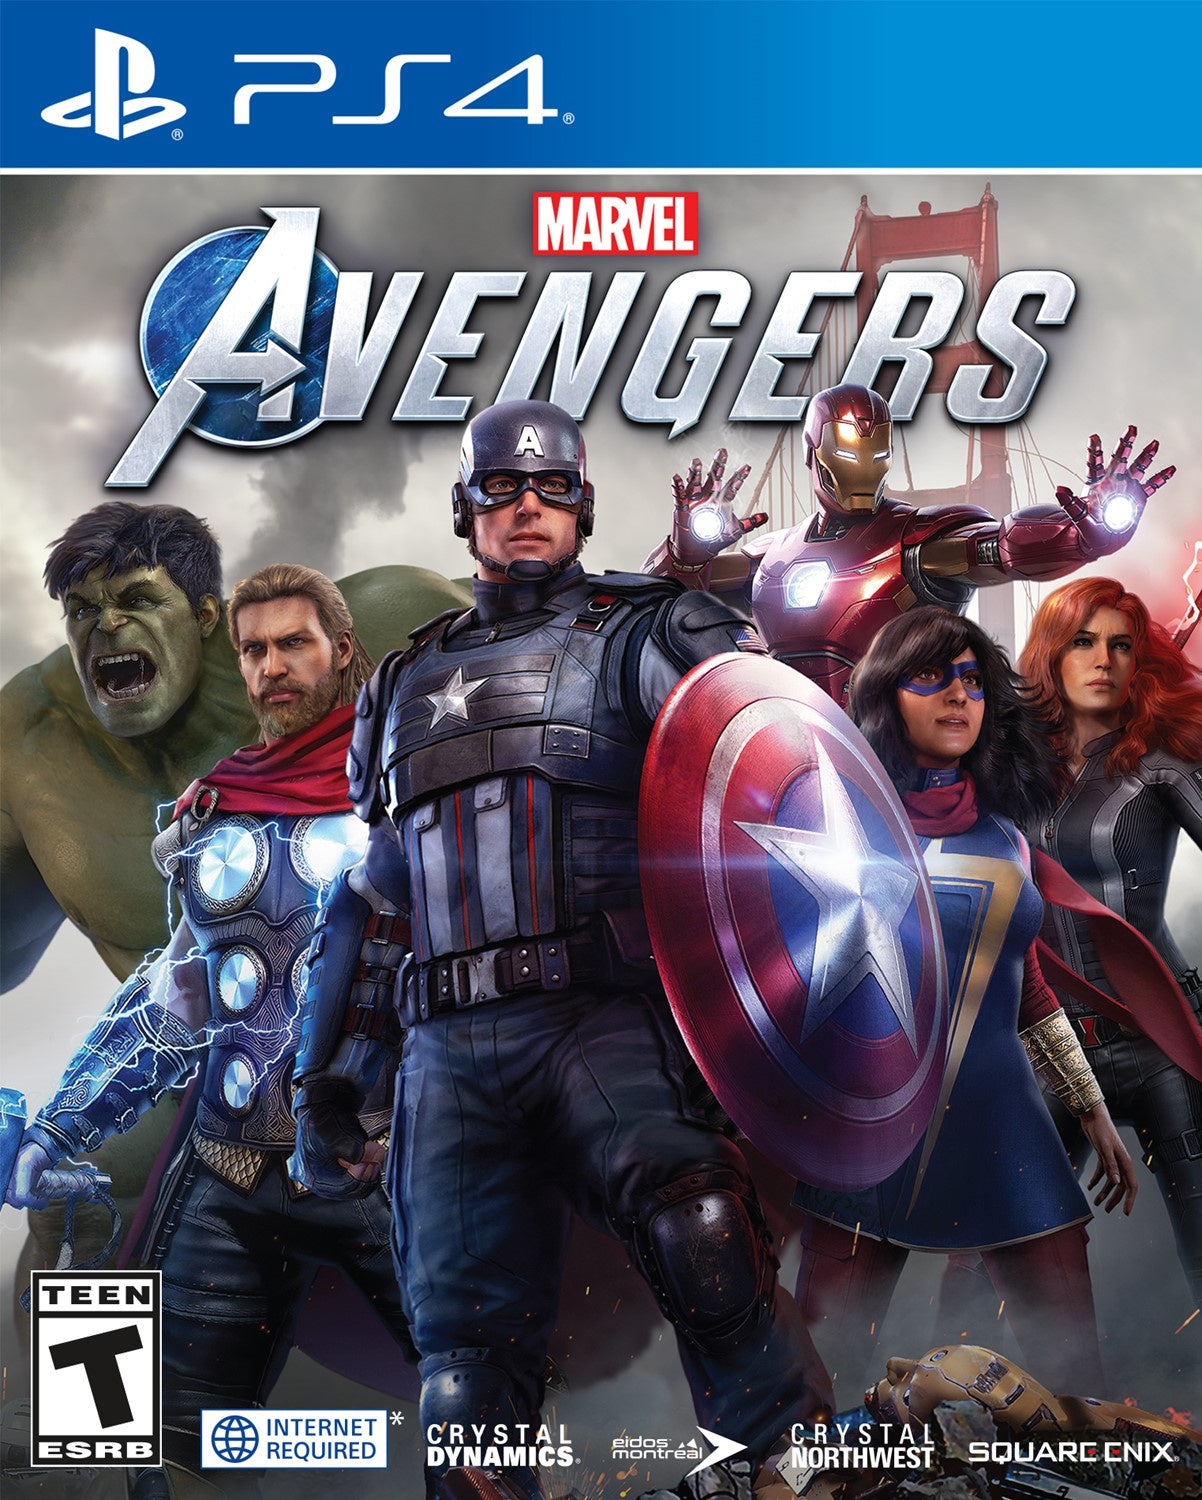 Marvel's Avengers - PS4